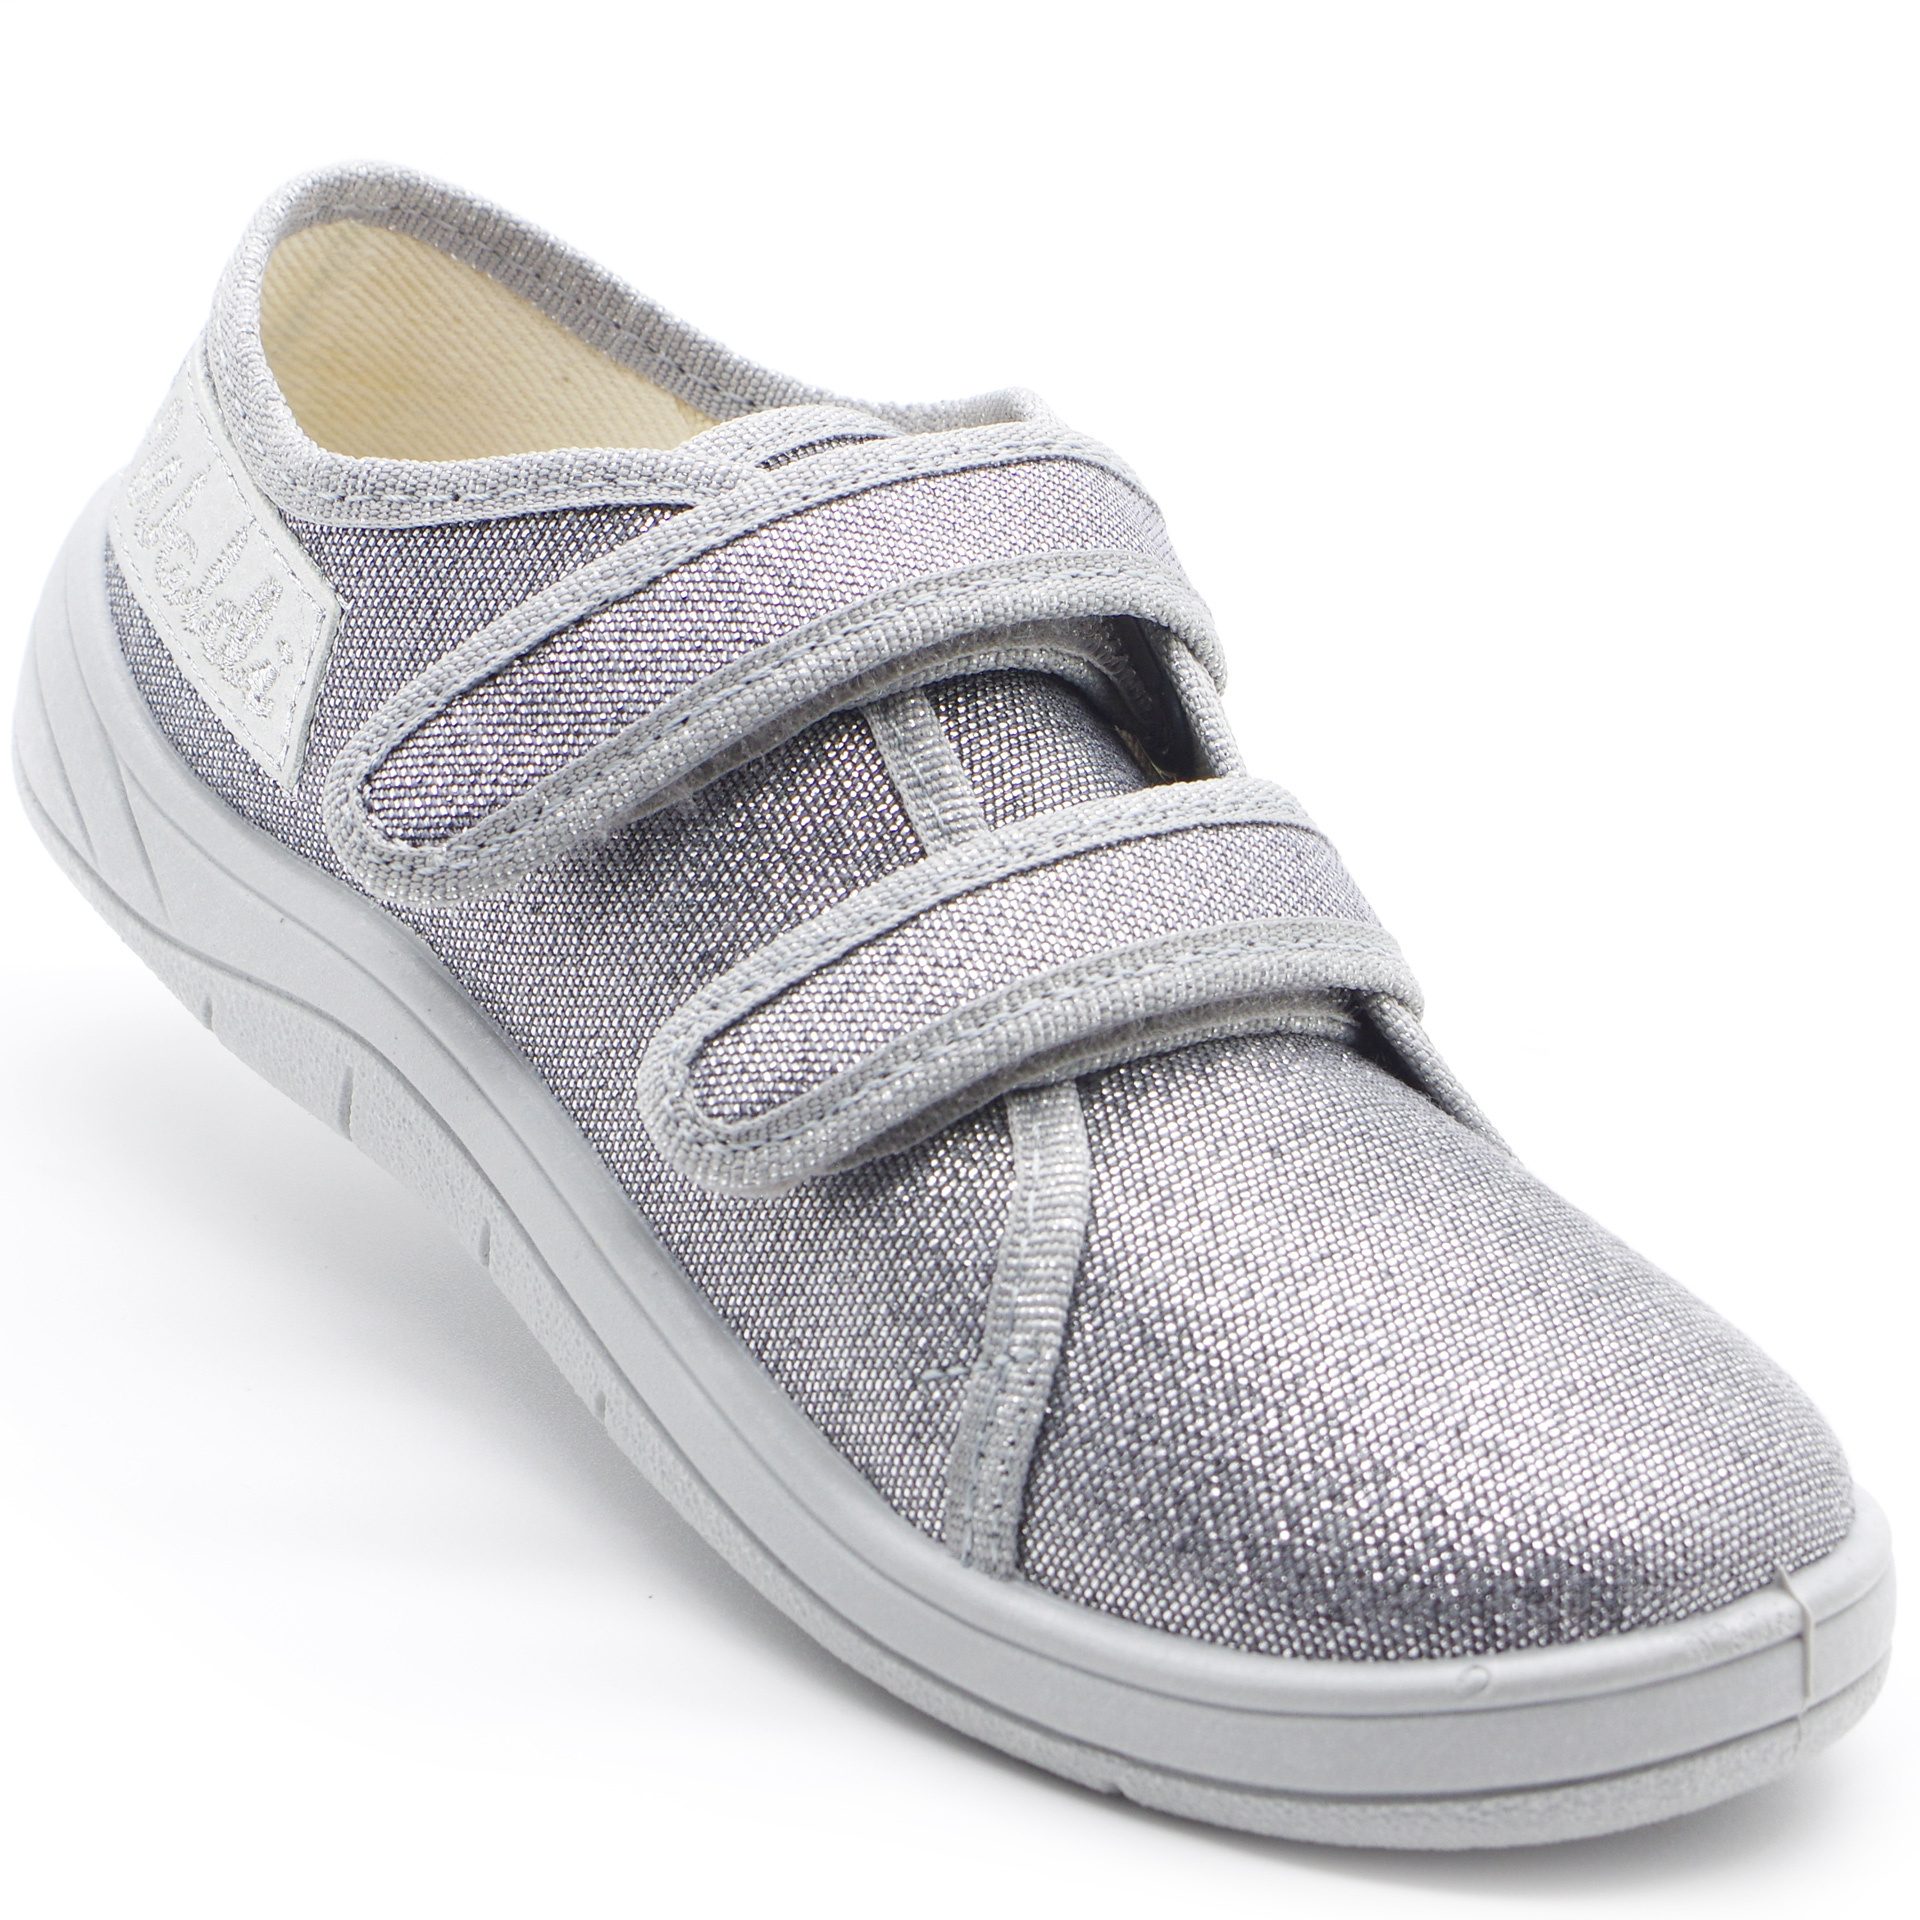 Текстильная обувь для девочек Waldi Кеды (2210) цвет Серебрянный 30-36 размеры – Sole Kids